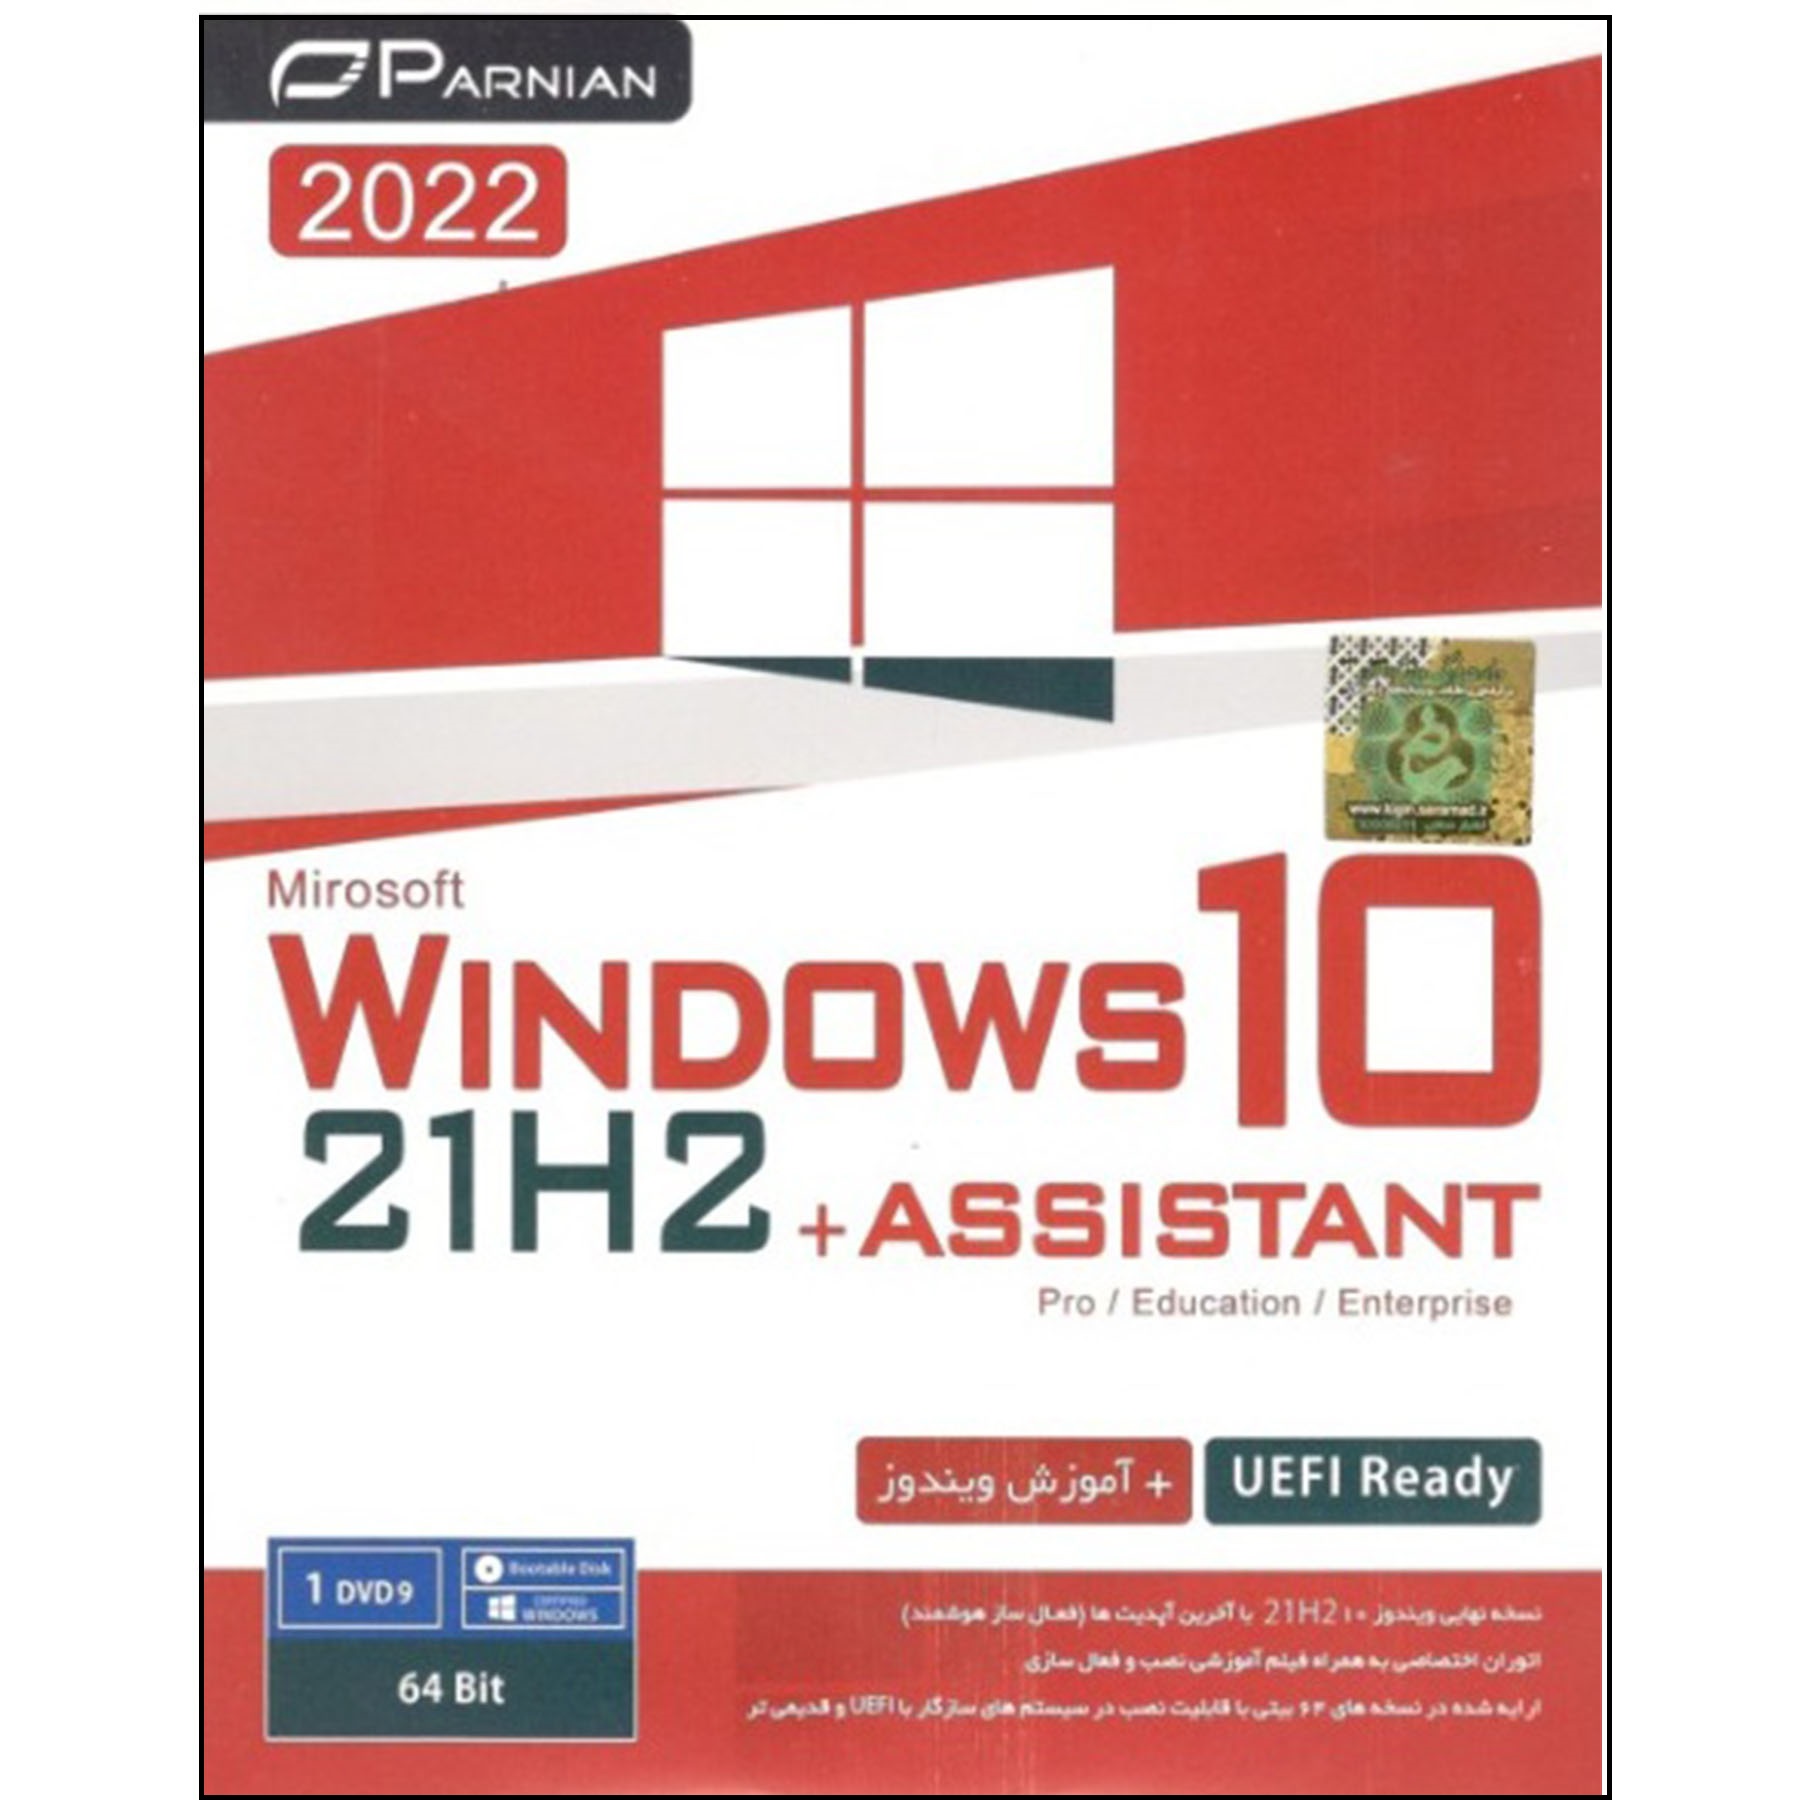 سیستم عامل windows 10 + assistant 21h2 UEFI نشر پرنیان